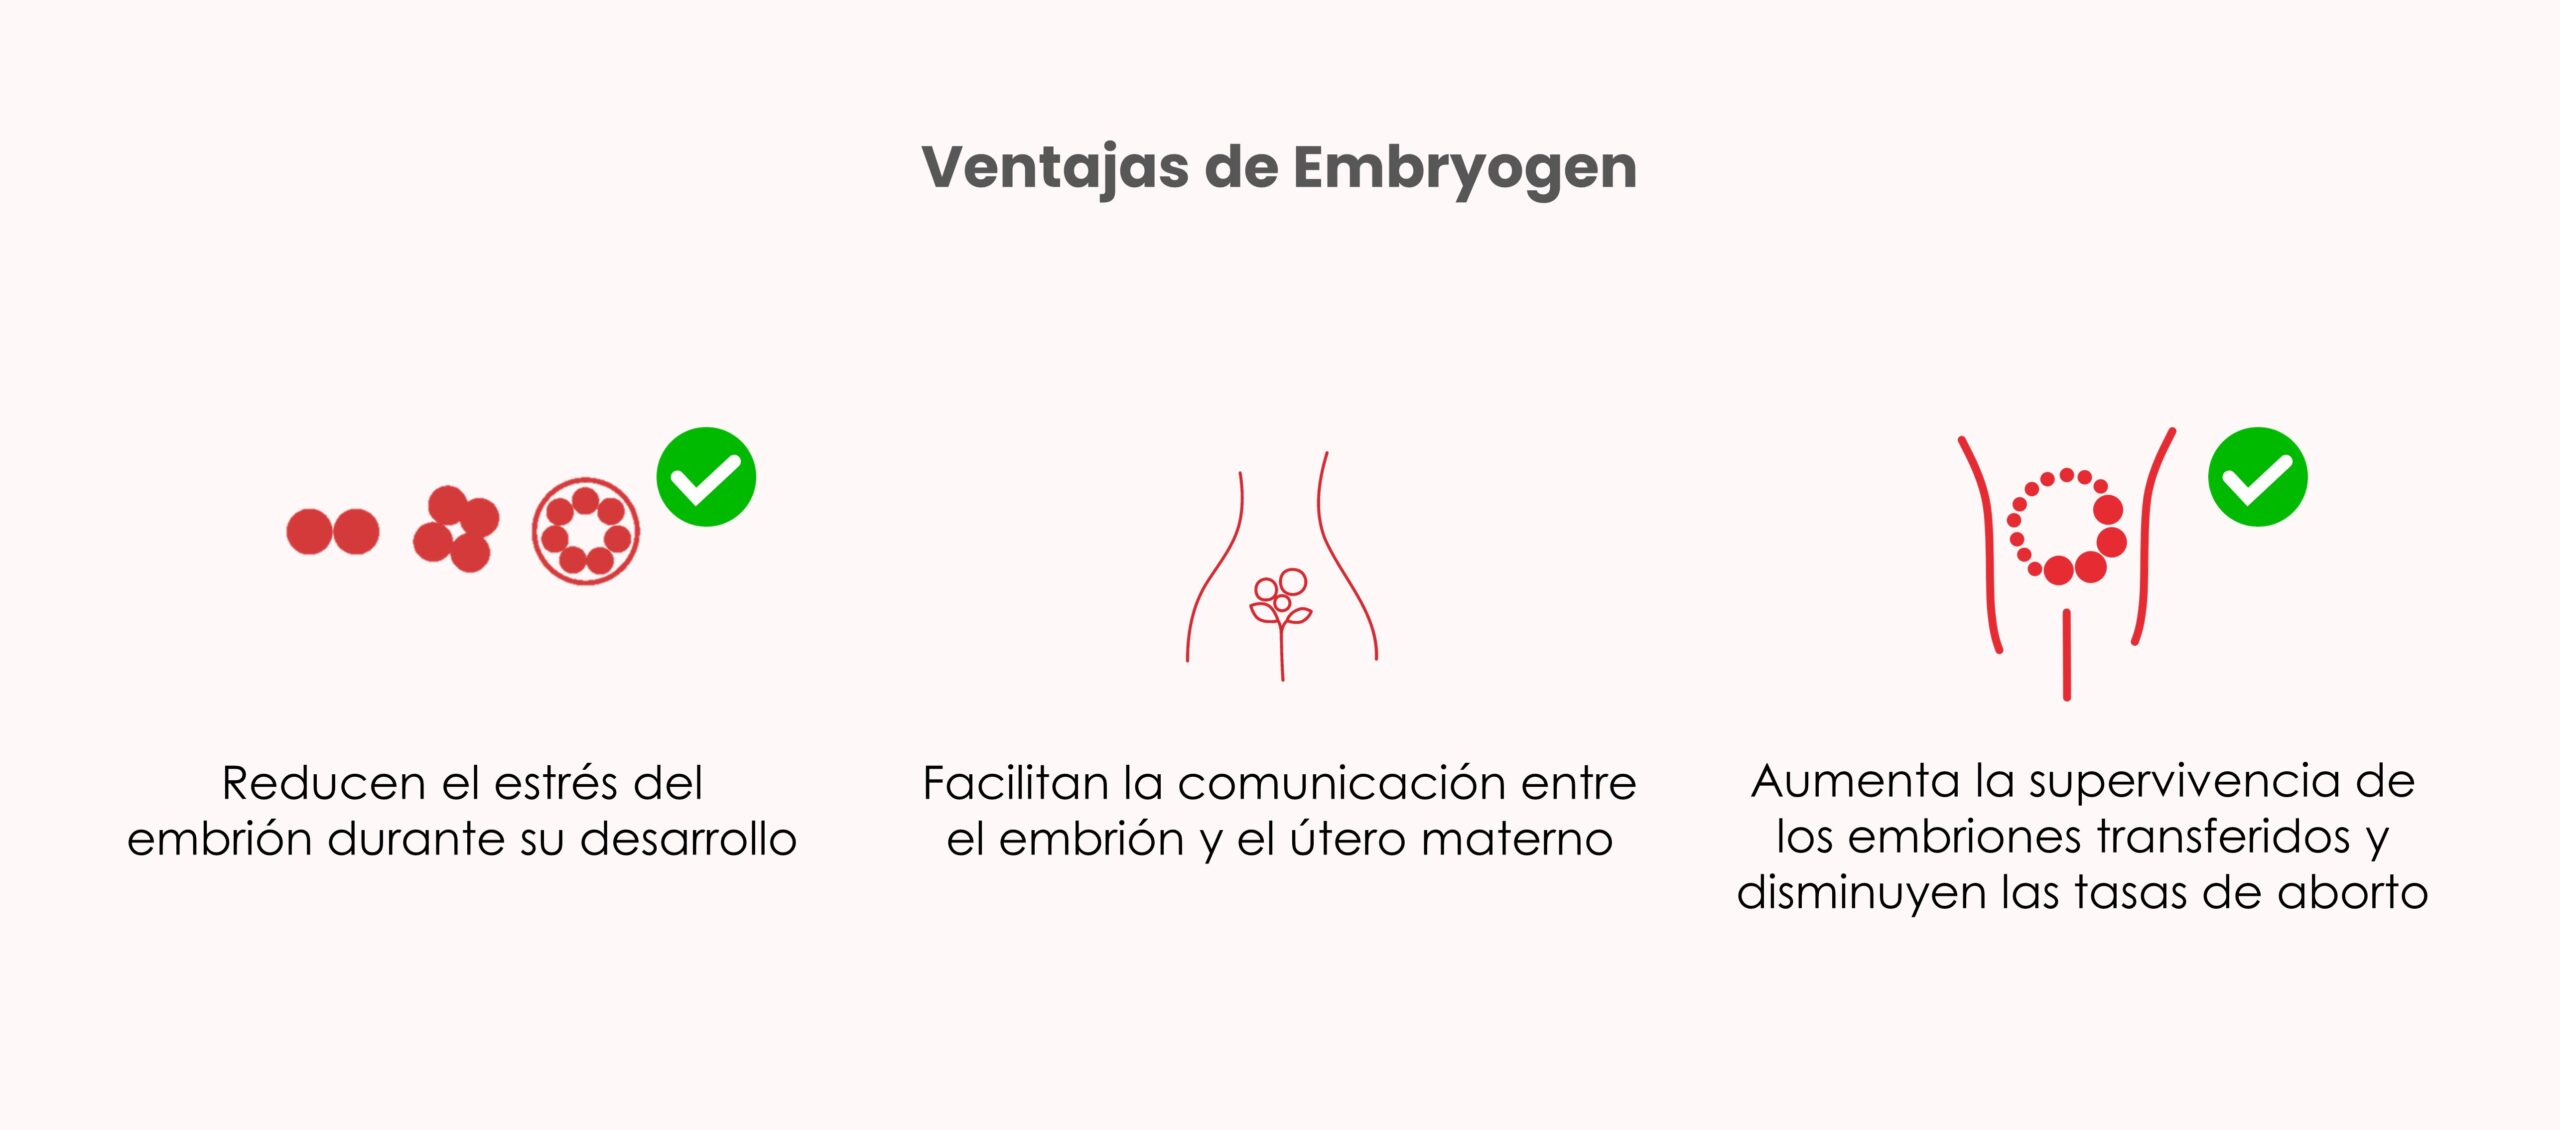 Ventajas de usar Embryogen en el cultivo embrionario